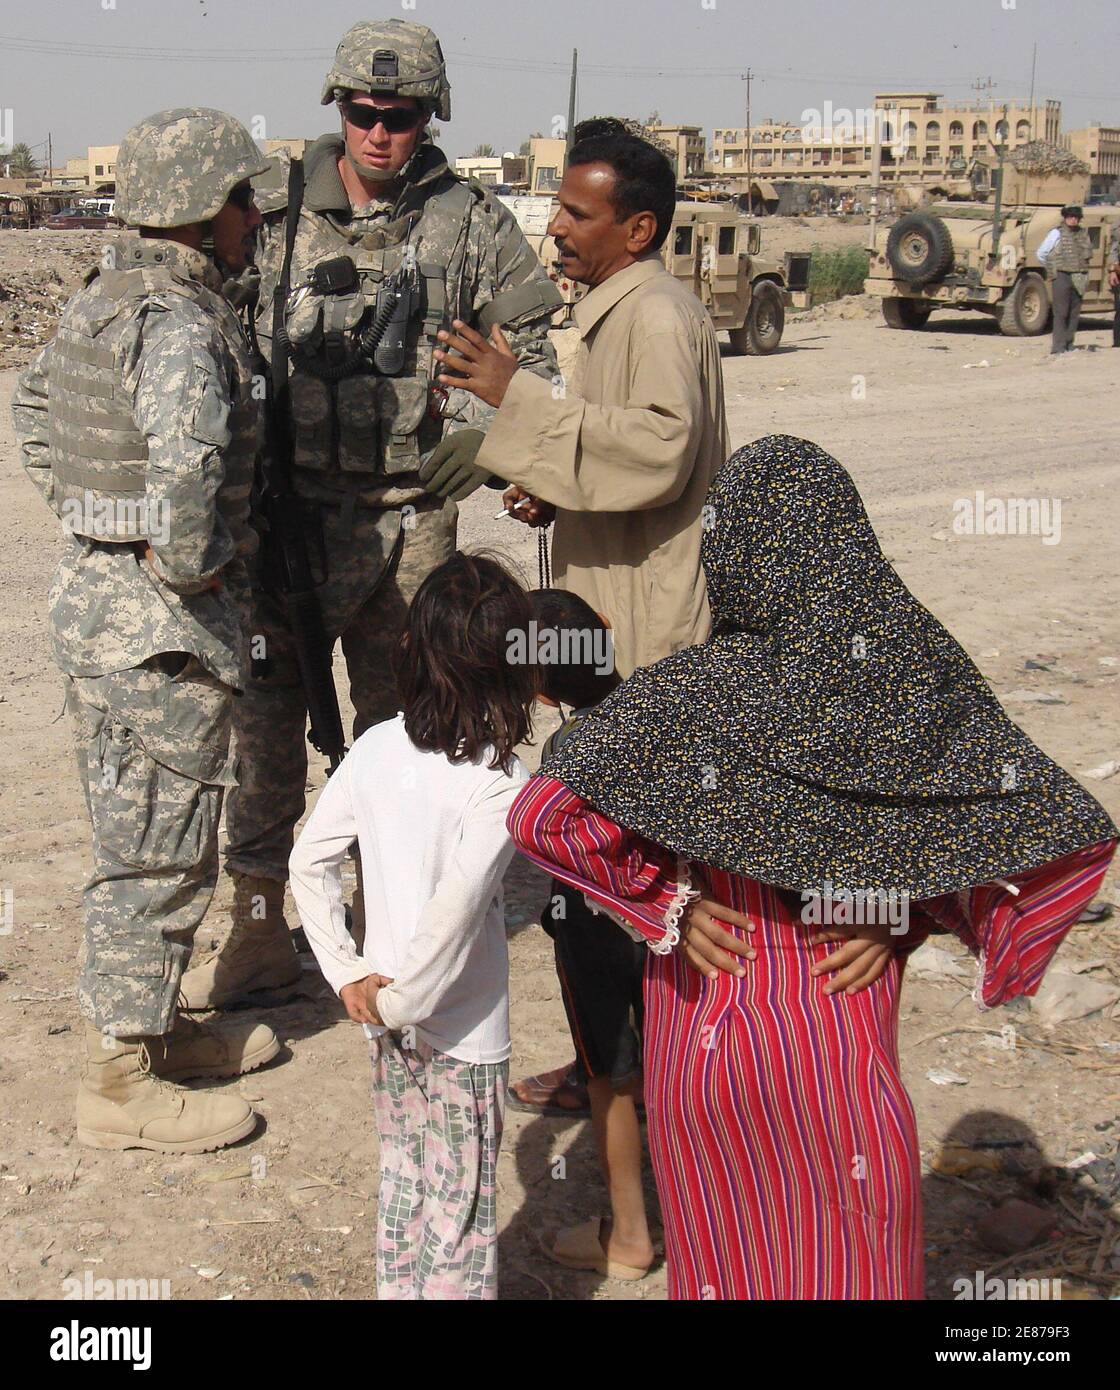 Un résident parle à un soldat américain de l'équipe de combat de la 2e Brigade, 101e Division aéroportée, par l'intermédiaire d'un interprète dans le district de Shula à Bagdad, le 2 avril 2008. Photo prise le 2 avril 2008. REUTERS/Yasser Faisal (IRAK) Banque D'Images